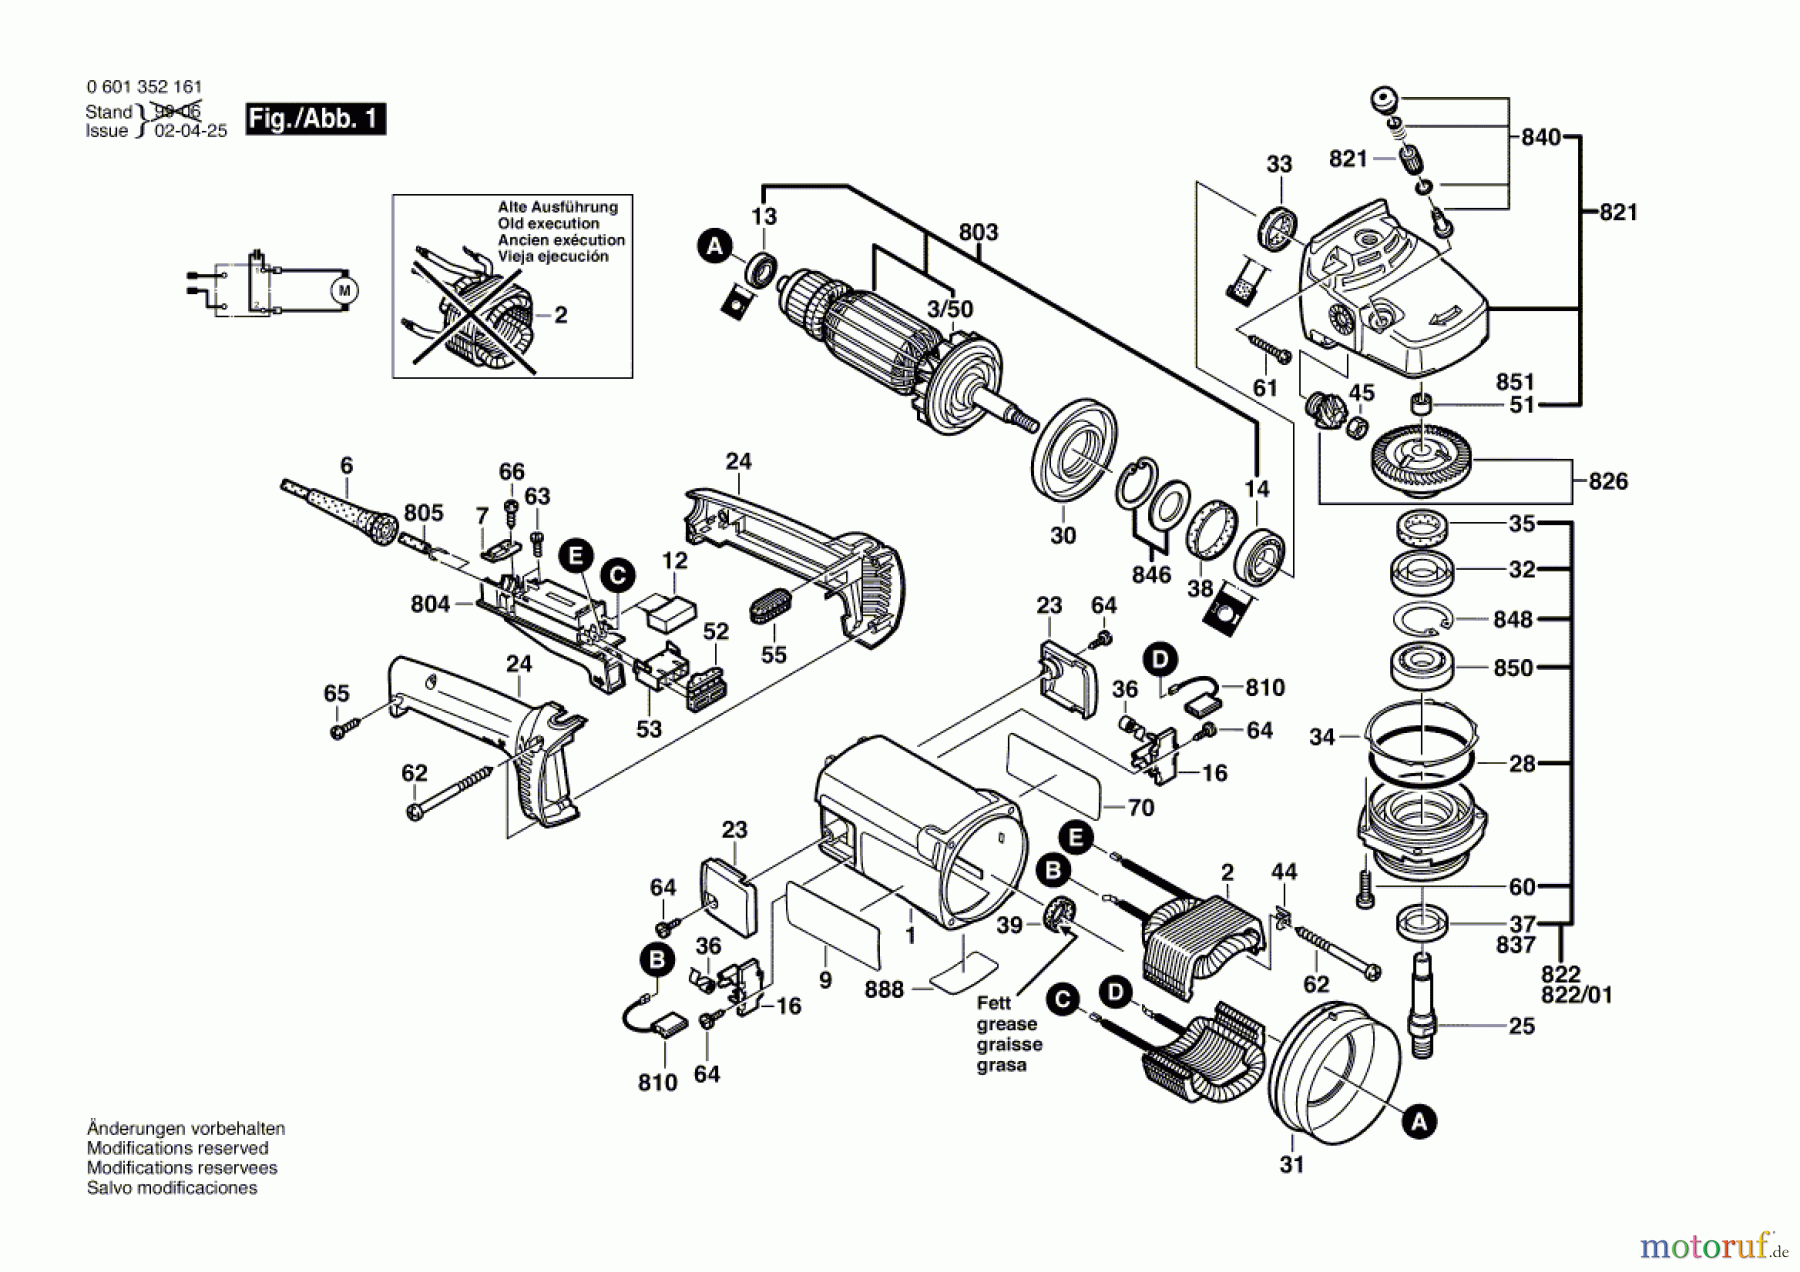  Bosch Werkzeug Winkelschleifer A-230 Seite 1